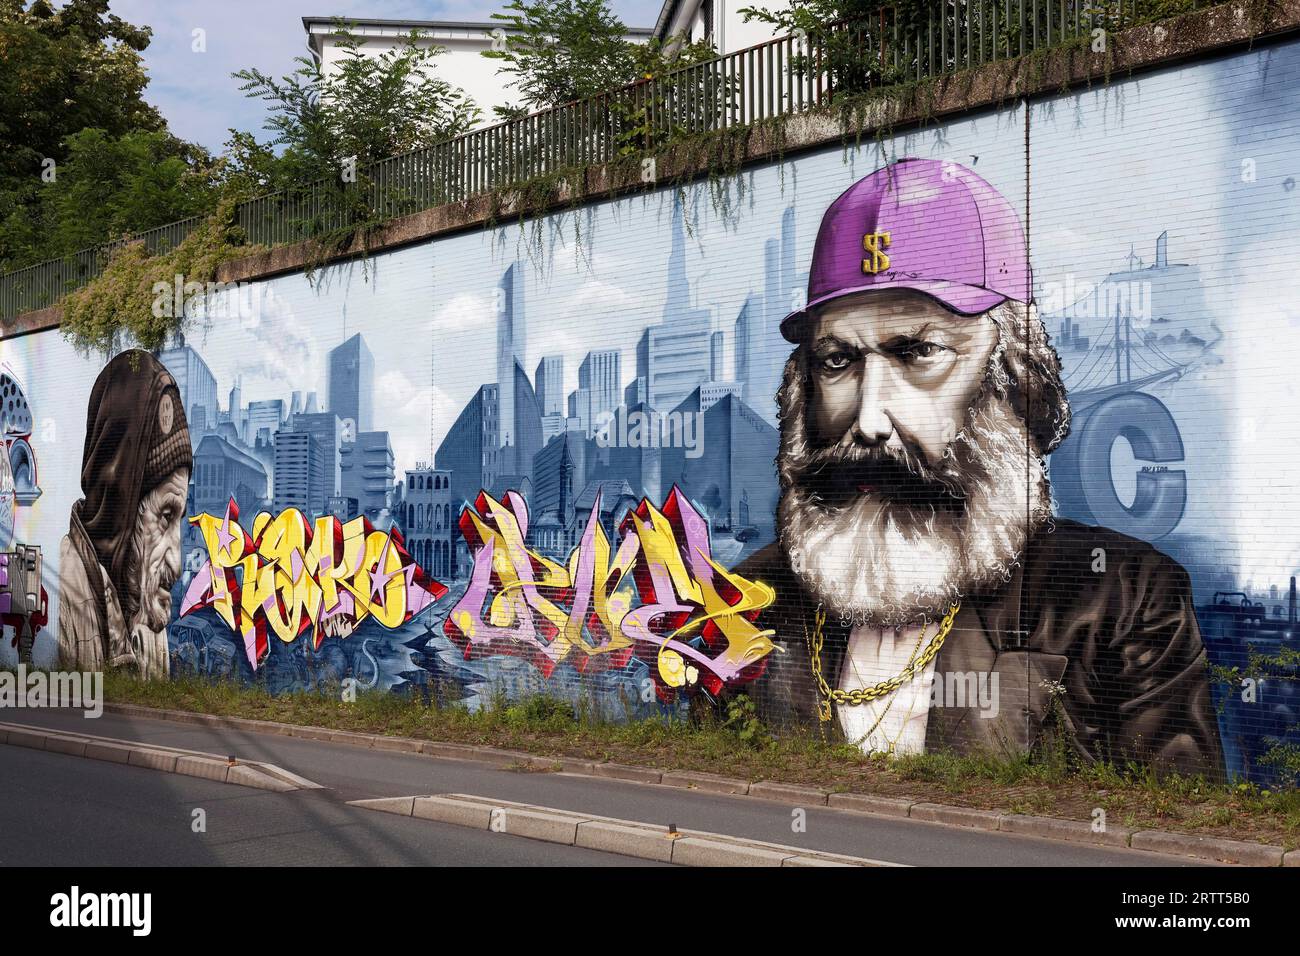 Karl Marx como hombre capitalista y sin hogar en yuxtaposición, retratos frente al horizonte de la gran ciudad, mural socialmente crítico por los artistas callejeros Foto de stock